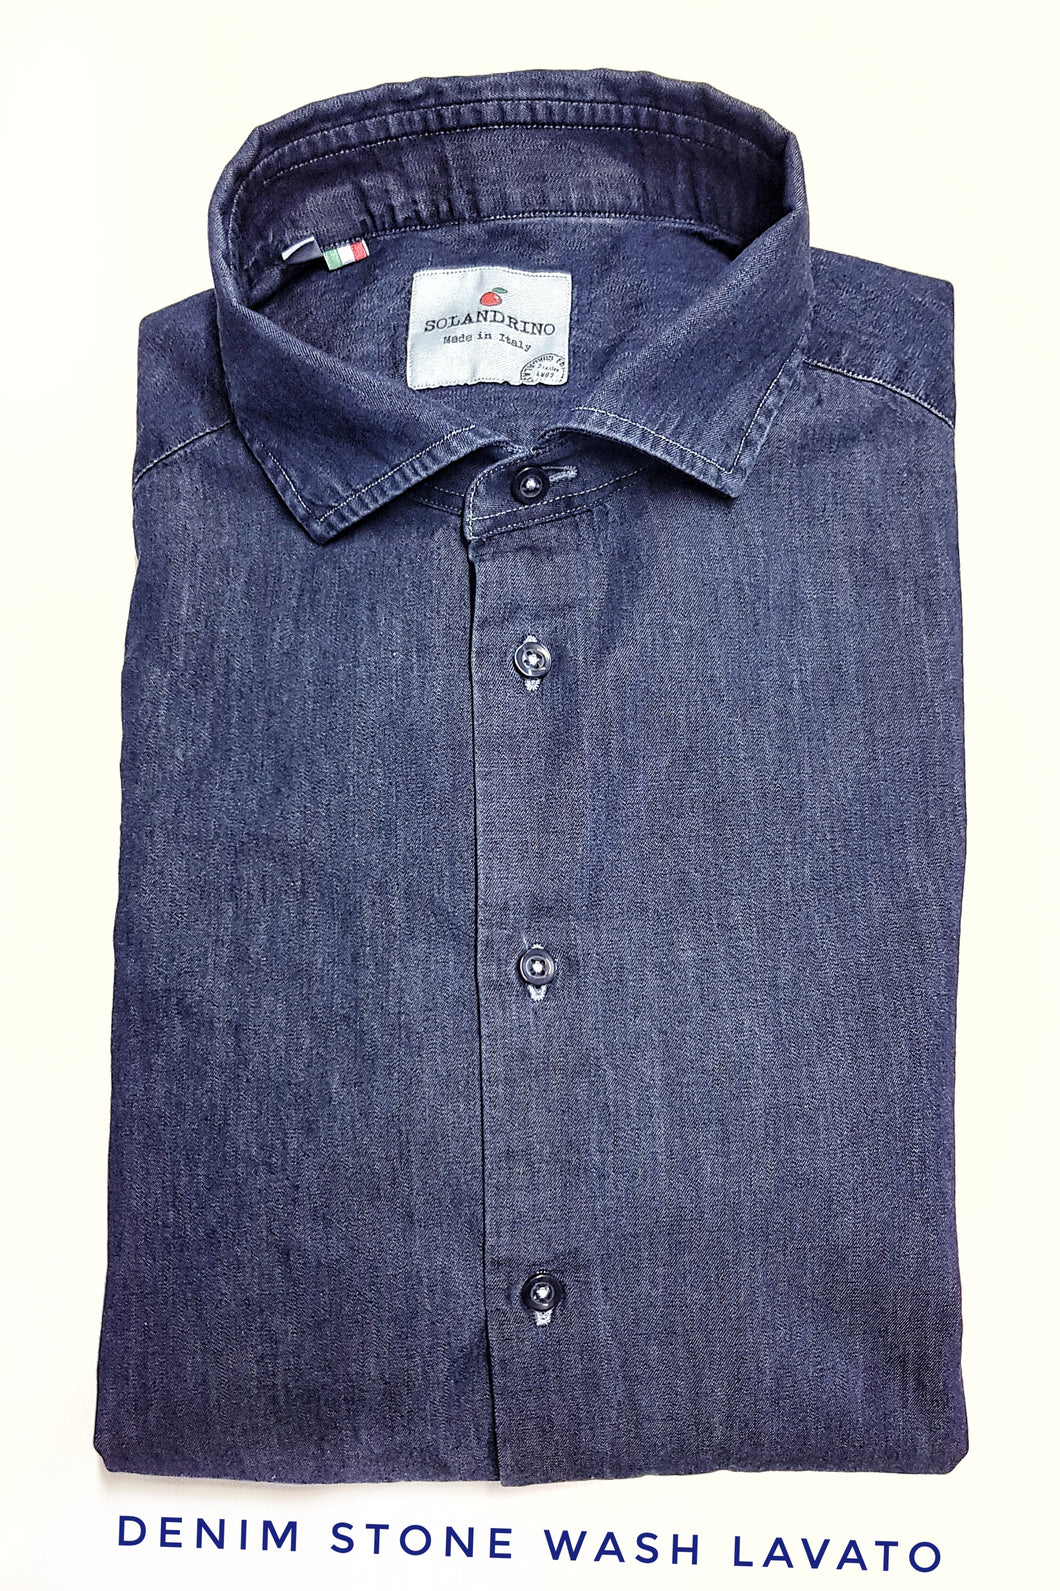 Camicia LAVATA blu jeans denim stone wash puro cotone made in italy